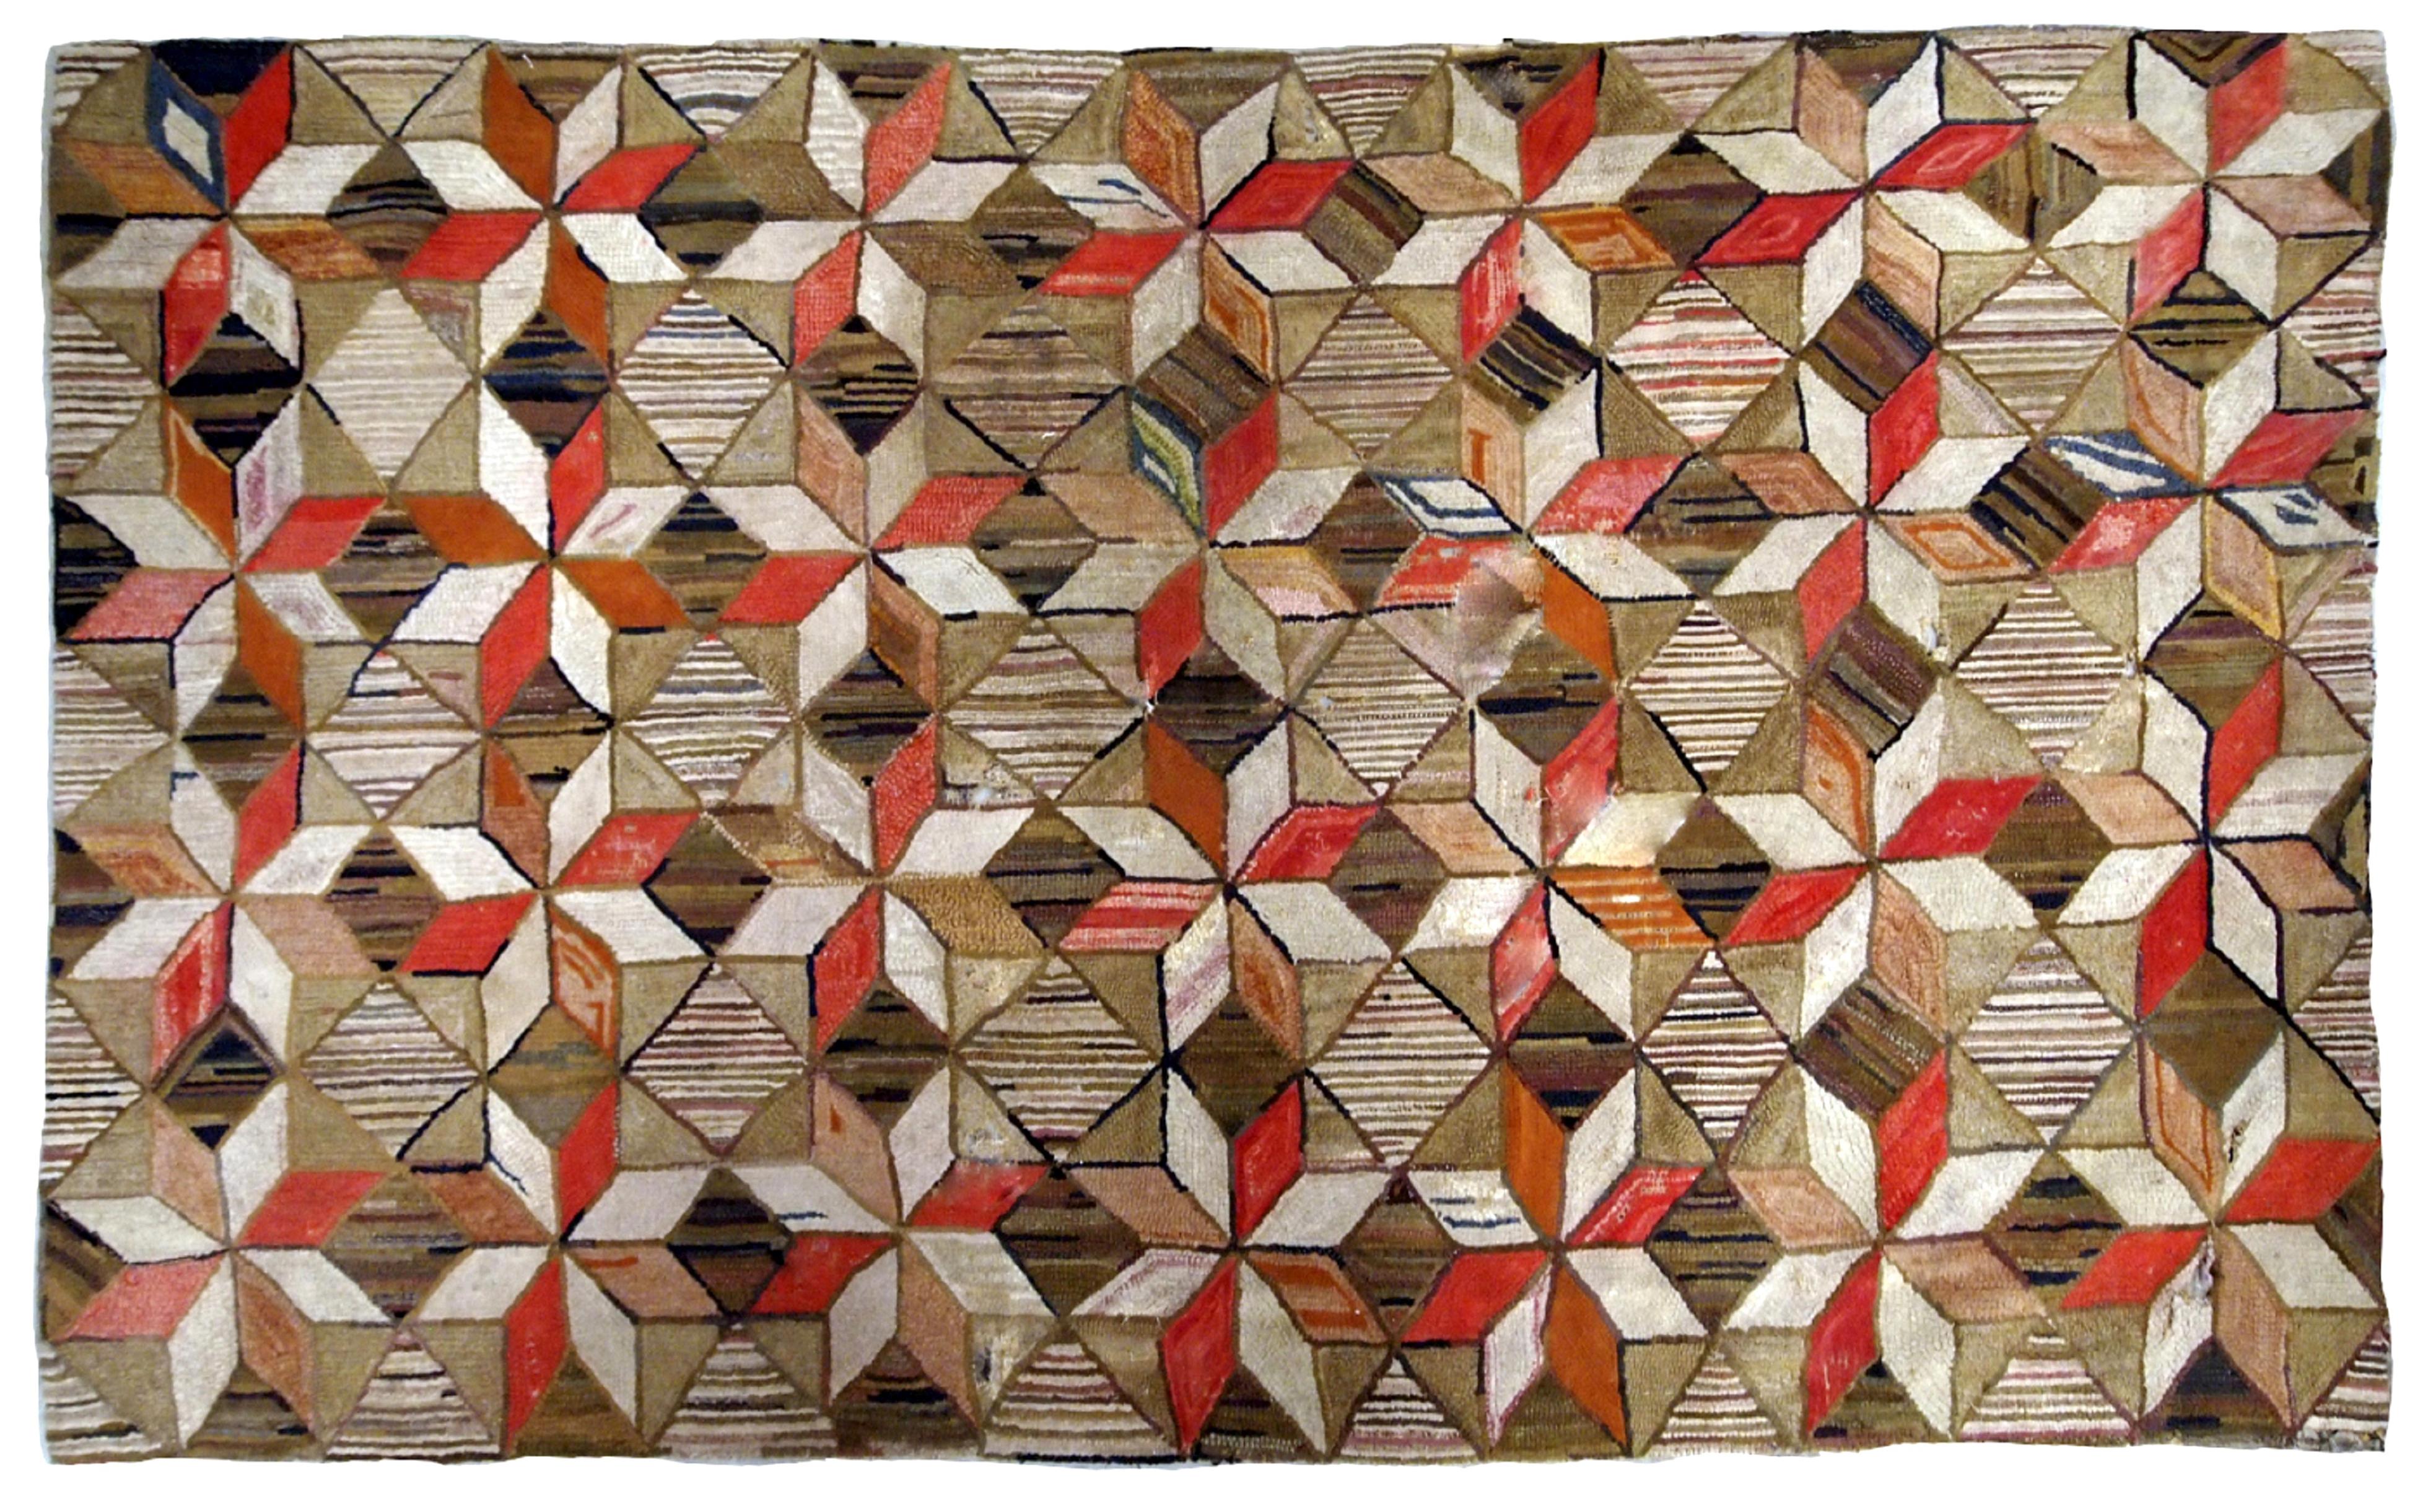 Antiker handgefertigter geometrischer amerikanischer Hakenteppich in Braun-, Rot-, Beige- und Olivtönen. Der Teppich hat mehrere Löcher, sie wurden restauriert, er ist jetzt in gutem Zustand.
 